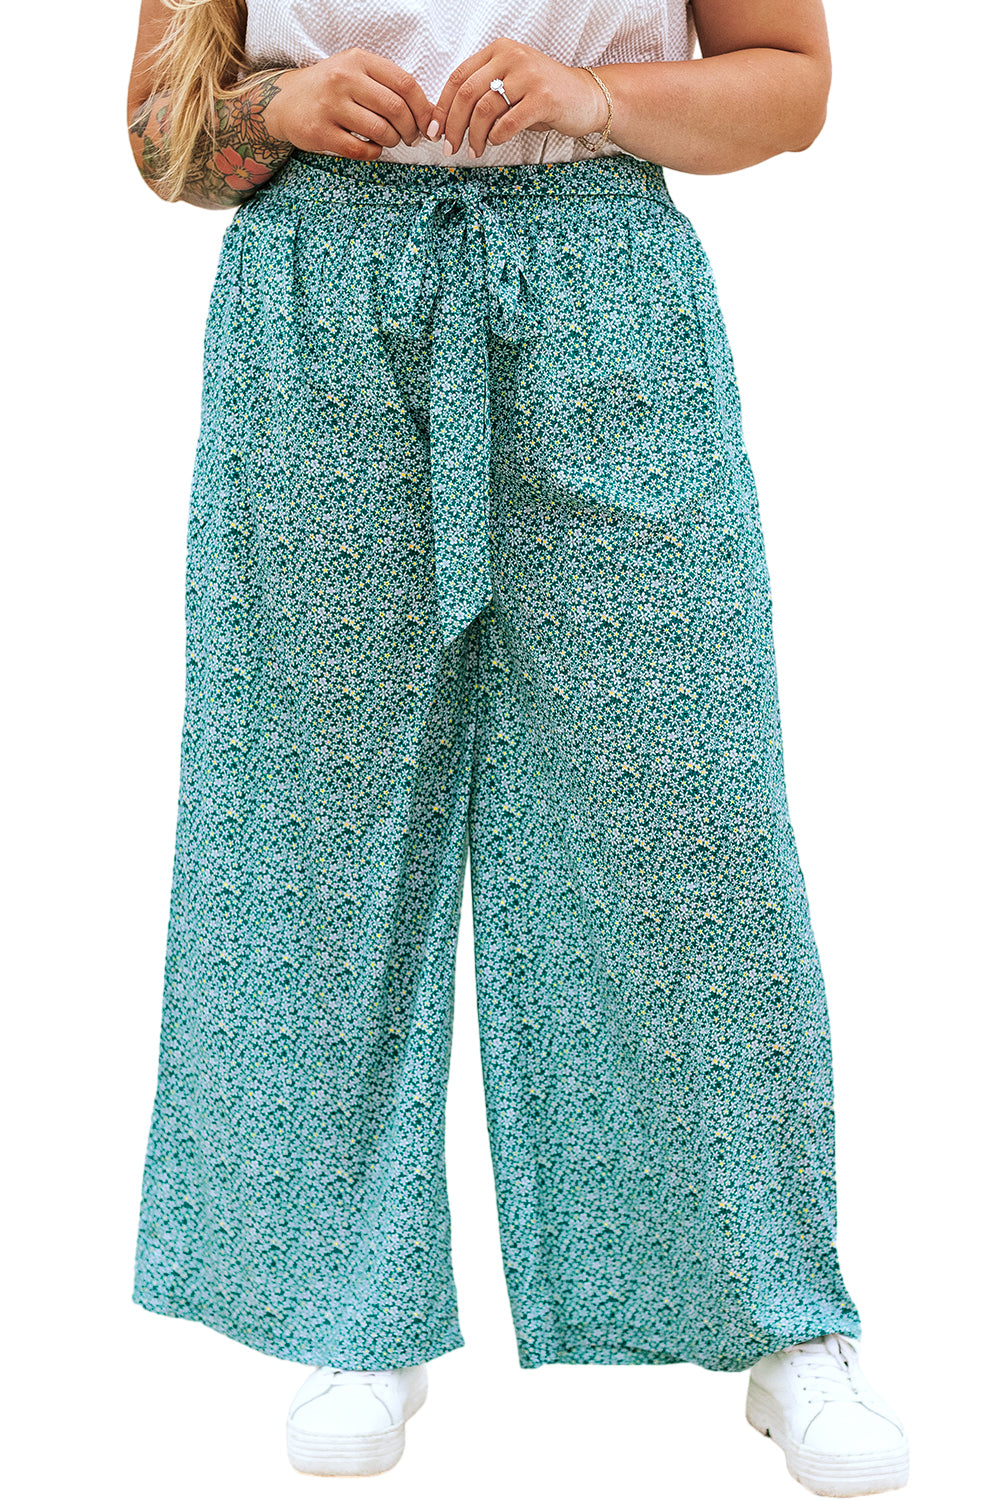 Zelene široke hlače s cvetličnim pasom velike velikosti